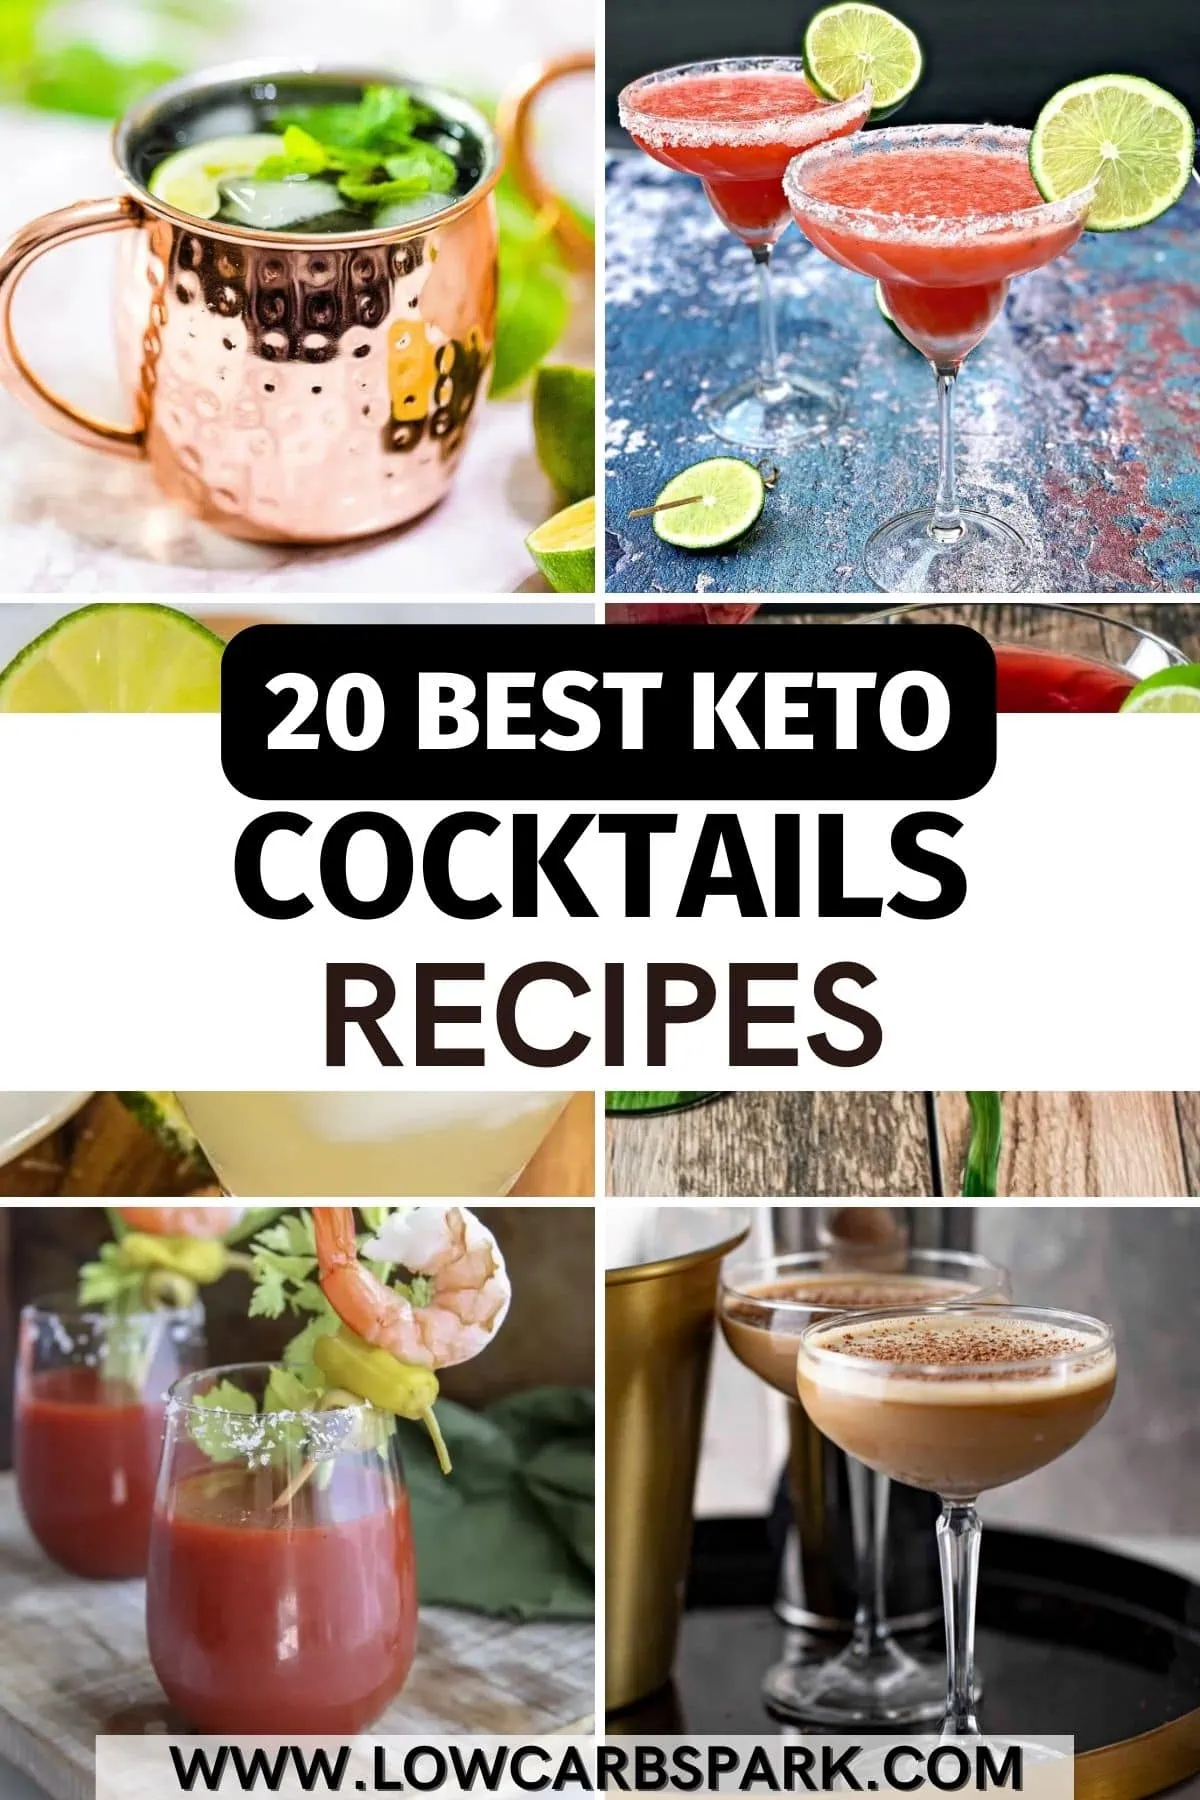 20 Best Keto Cocktails - Low Carb Cocktails